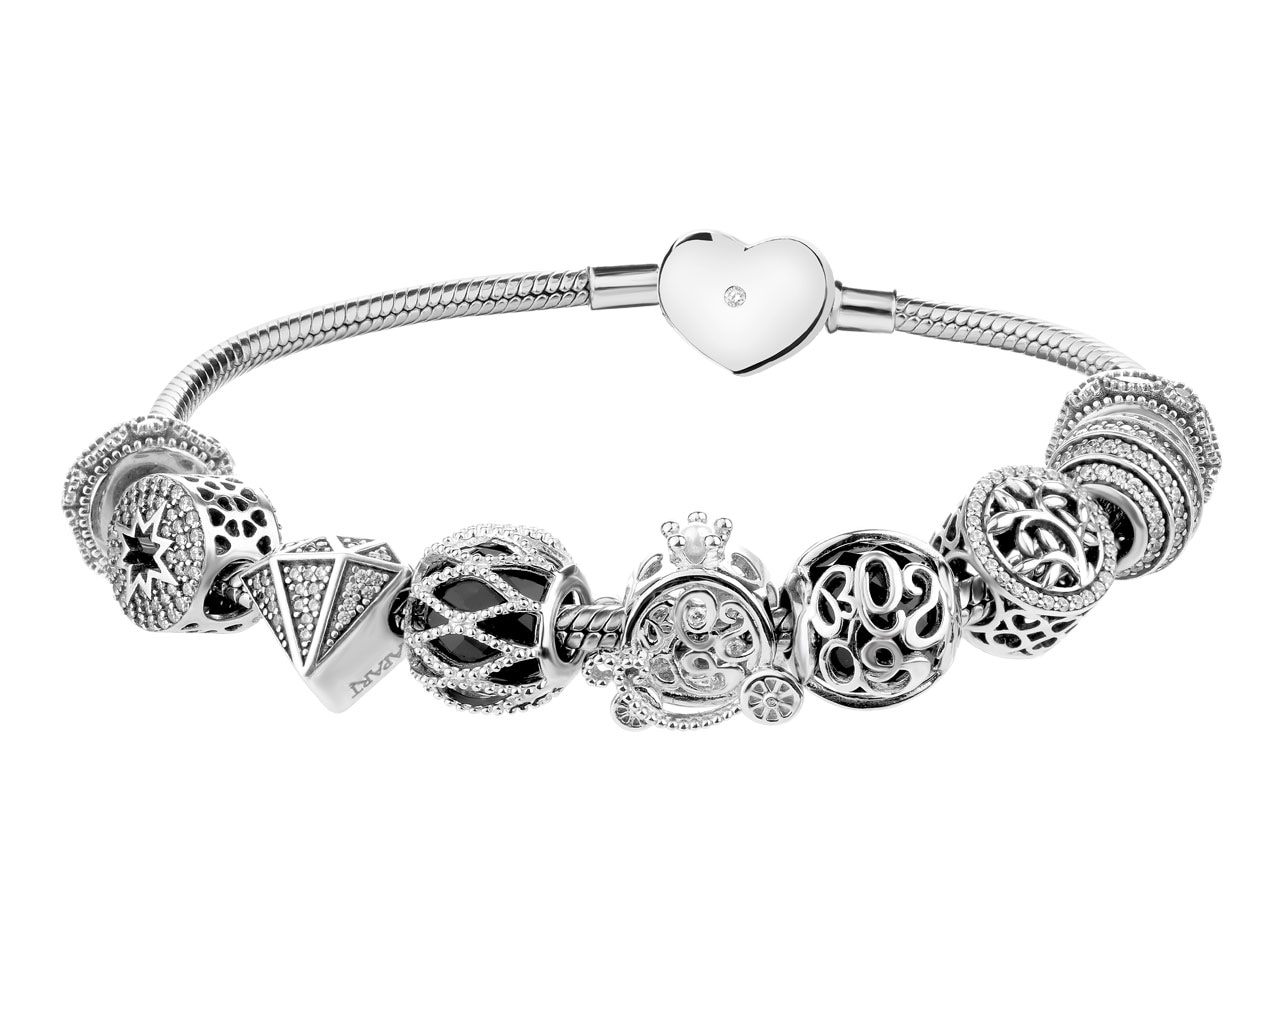 Stříbrný náramek beads - sada - strom života, hvězda, kočár, diamant, srdce 